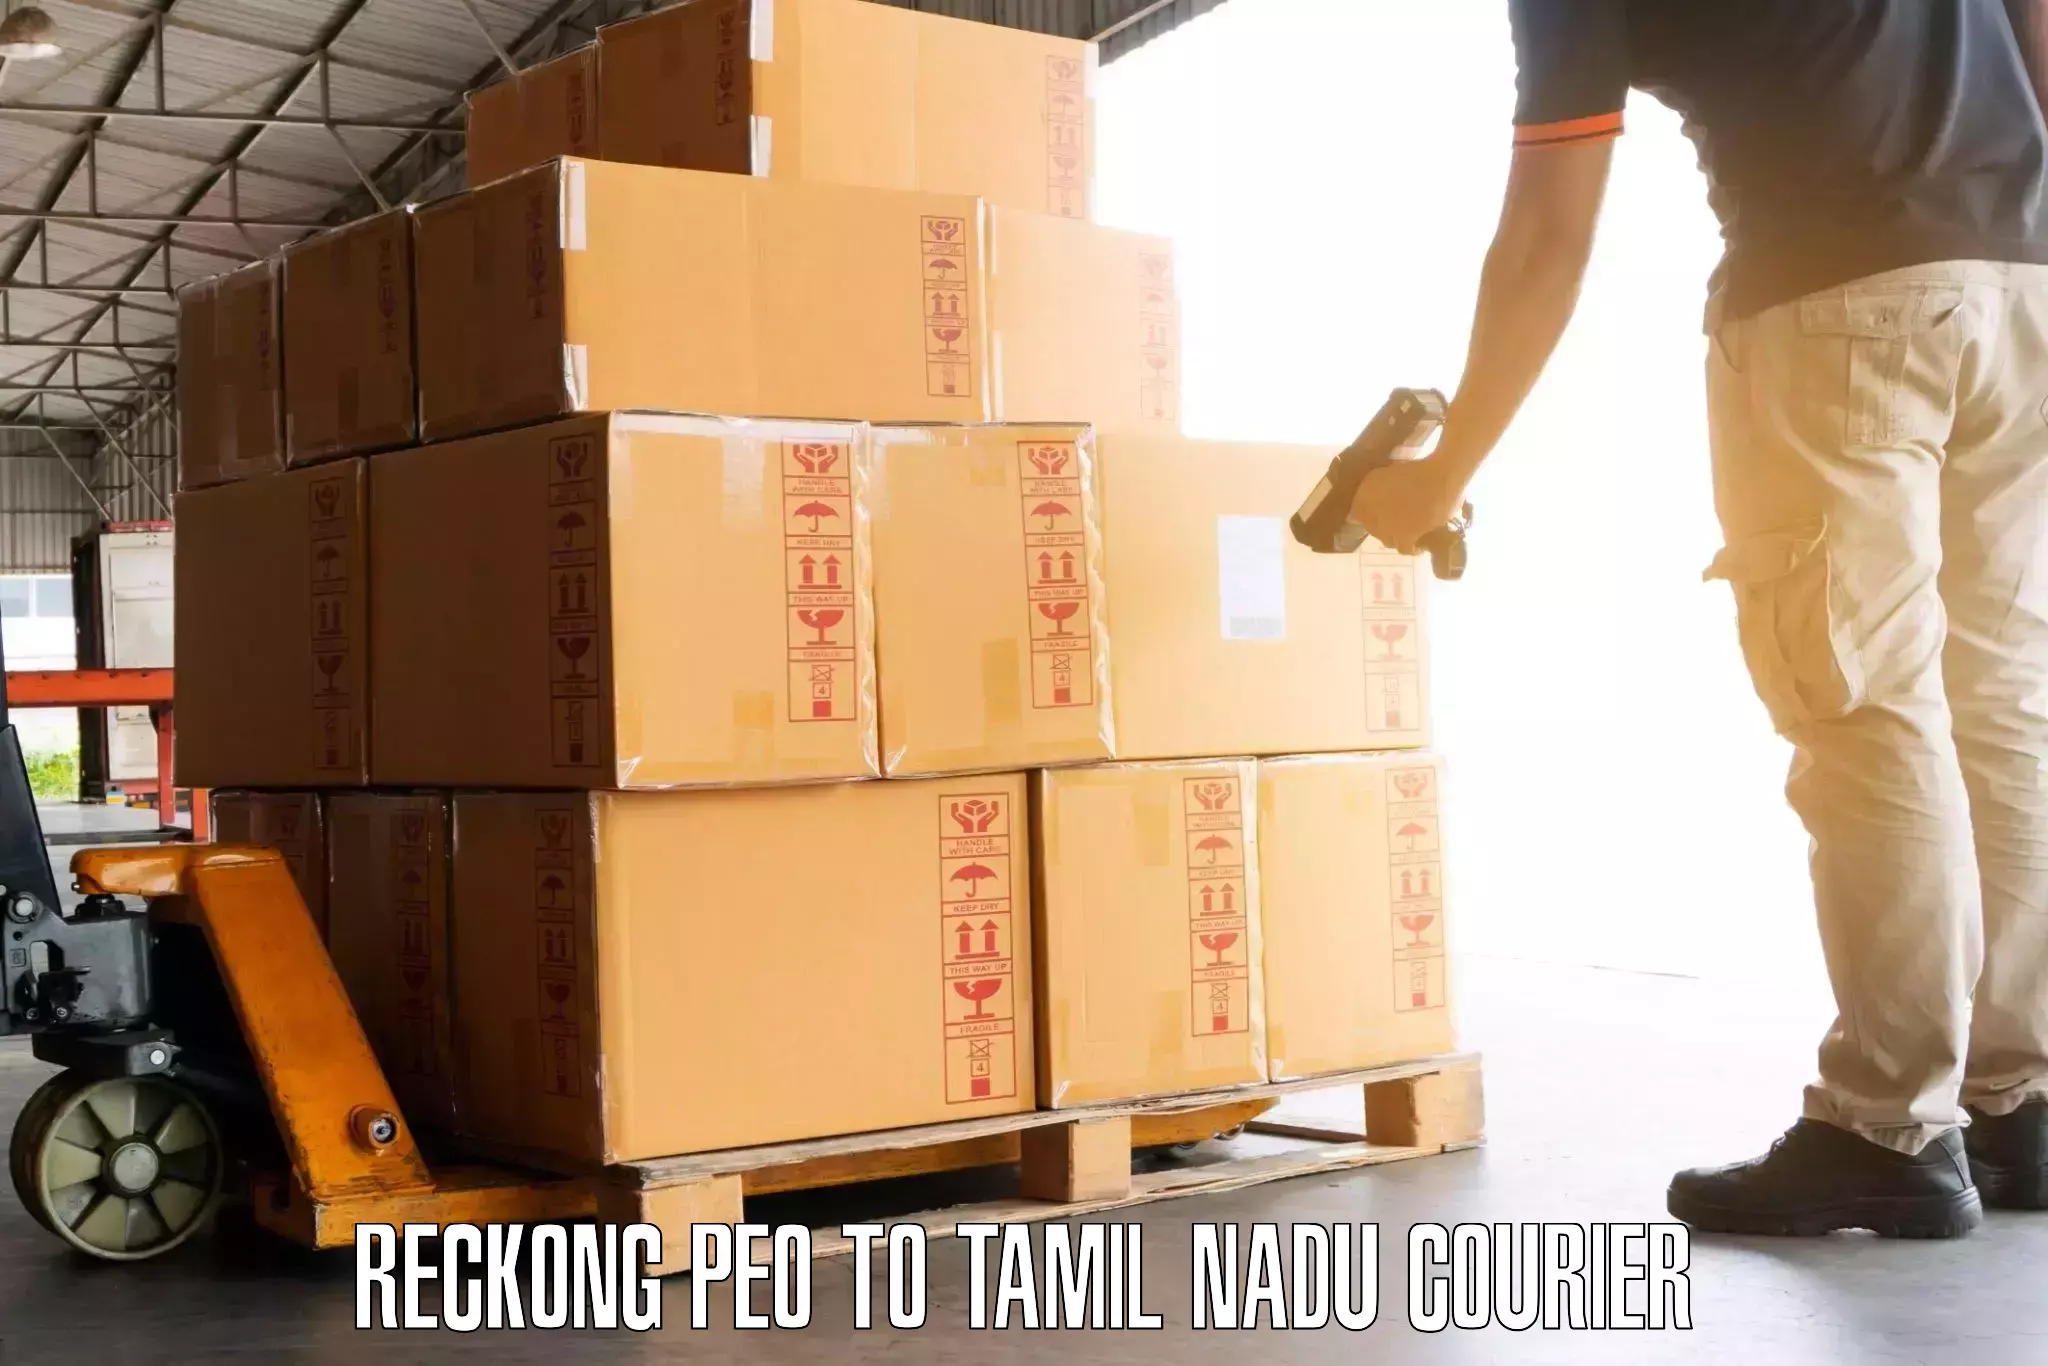 Door-to-door baggage service in Reckong Peo to Tamil Nadu